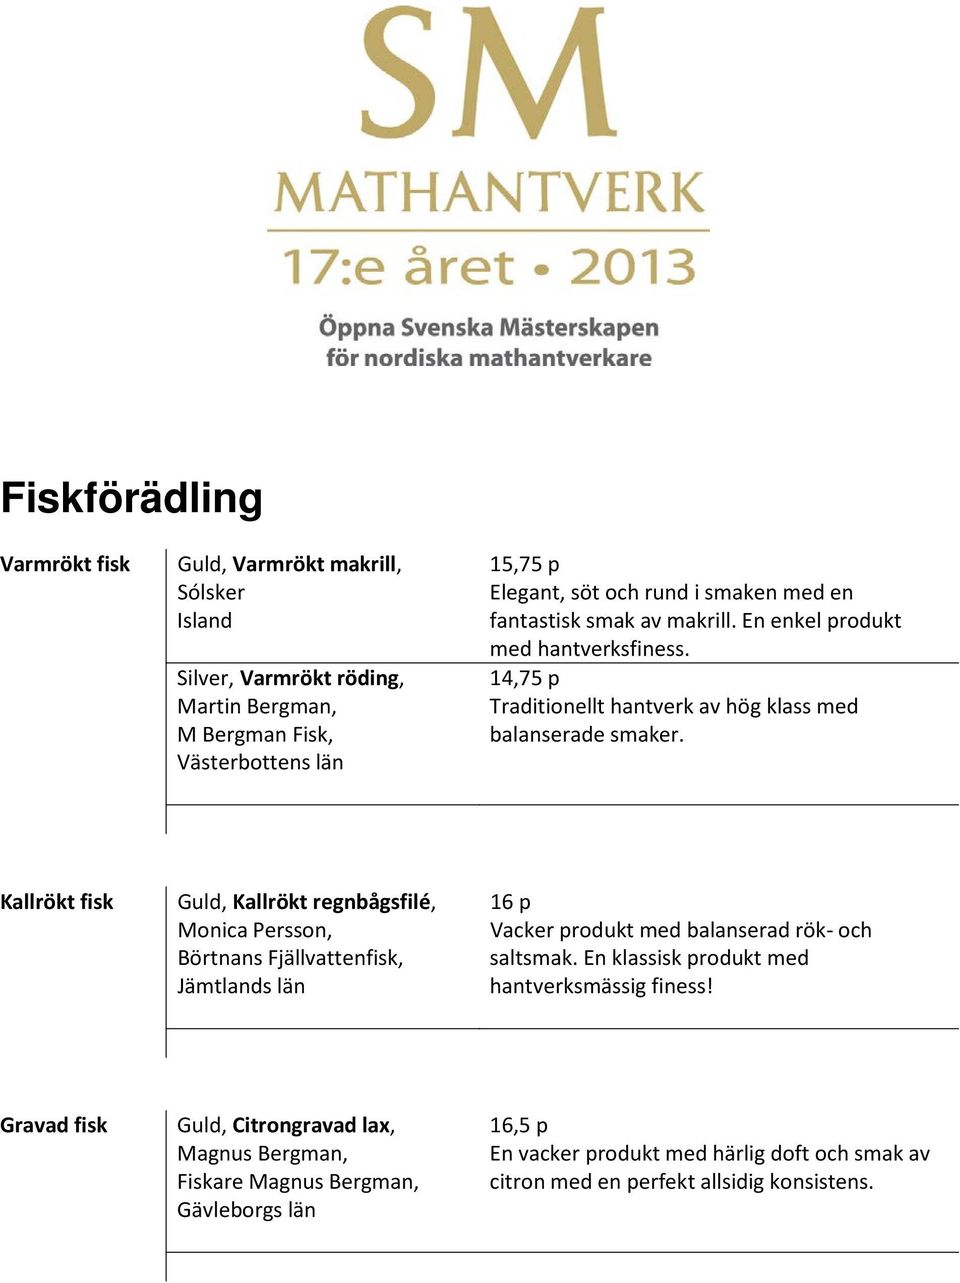 Kallrökt fisk Guld, Kallrökt regnbågsfilé, Monica Persson, Börtnans Fjällvattenfisk, Vacker produkt med balanserad rök- och saltsmak.